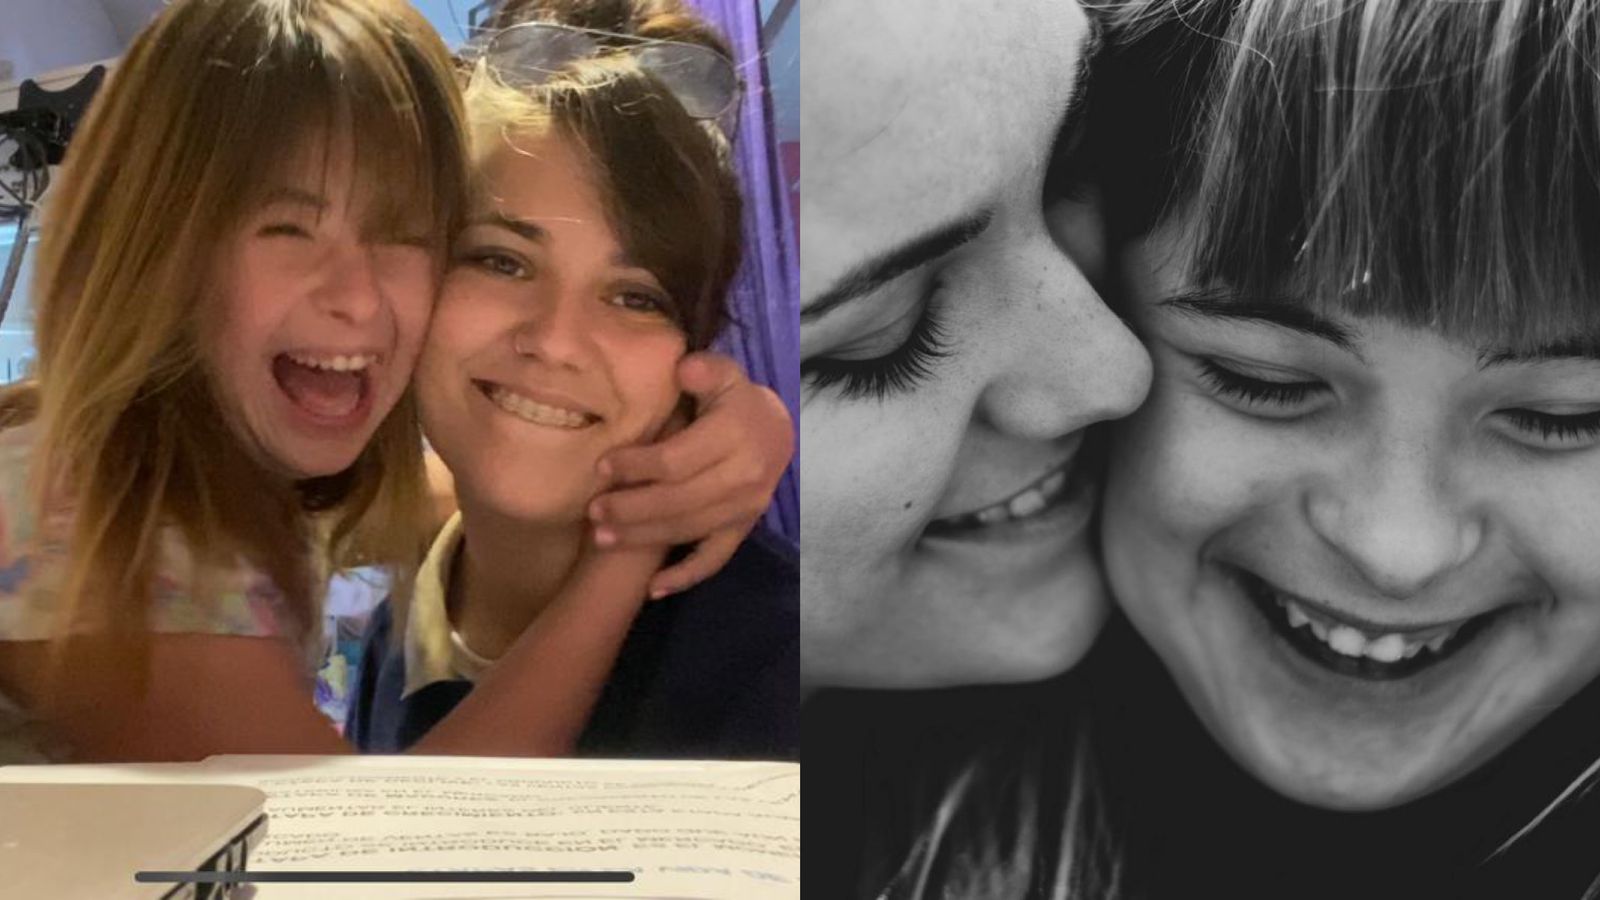 Sube videos ayudando a estudiar a una chica de 13 años con Síndrome de Down y su historia se volvió viral: “Enseñamos cómo es la realidad”